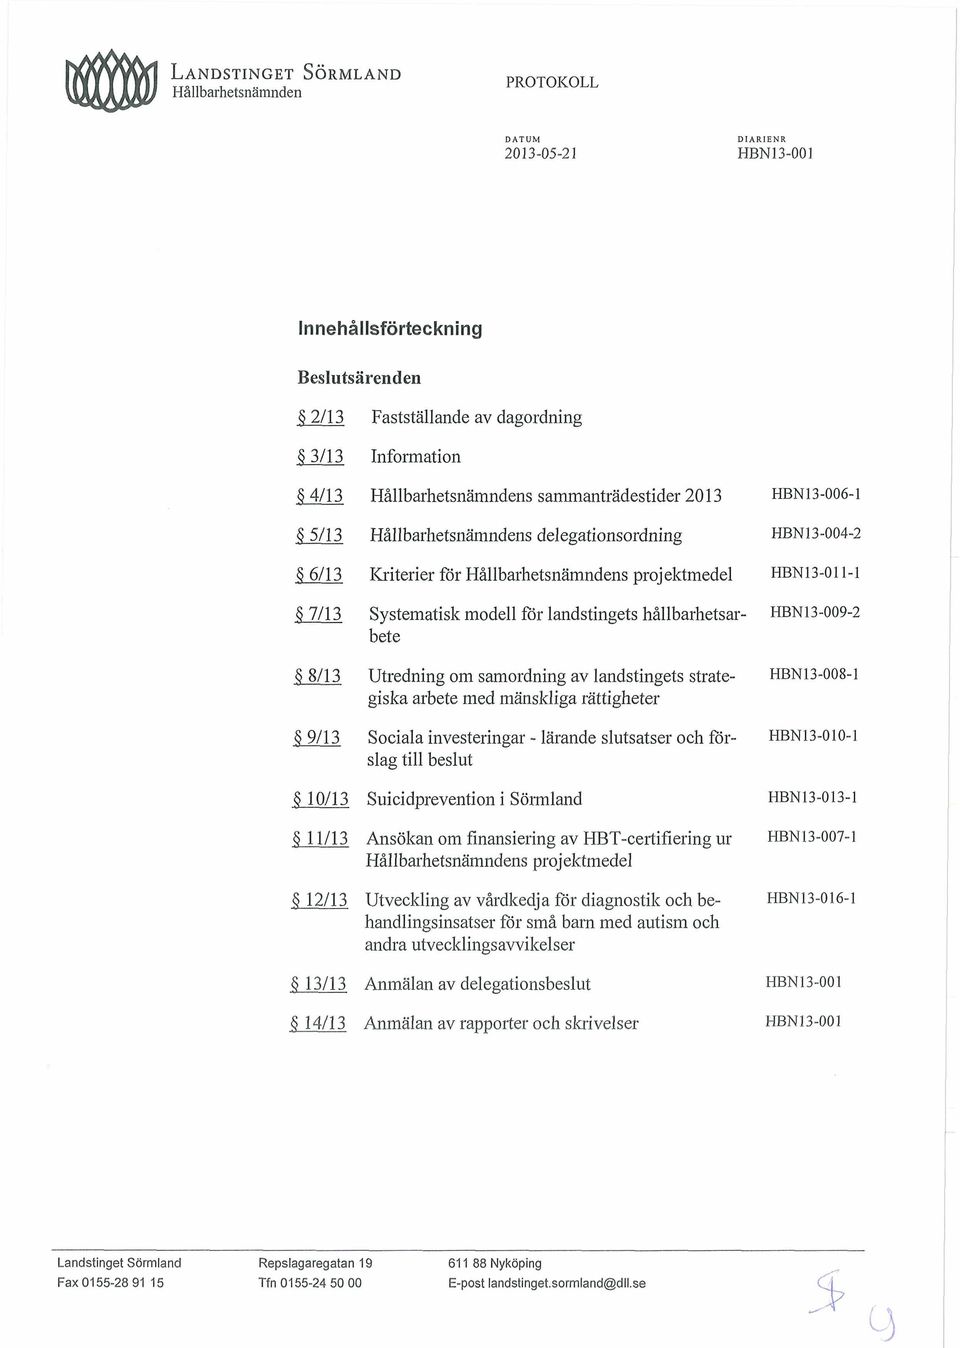 investeringar - lärande slutsatser och förslag till beslut HBN13-010-1 Suicidprevention i Sörmland Ansökan om finansiering av HBT-certifiering ur Hållbarhetsnämndens projektmedel Utveckling av